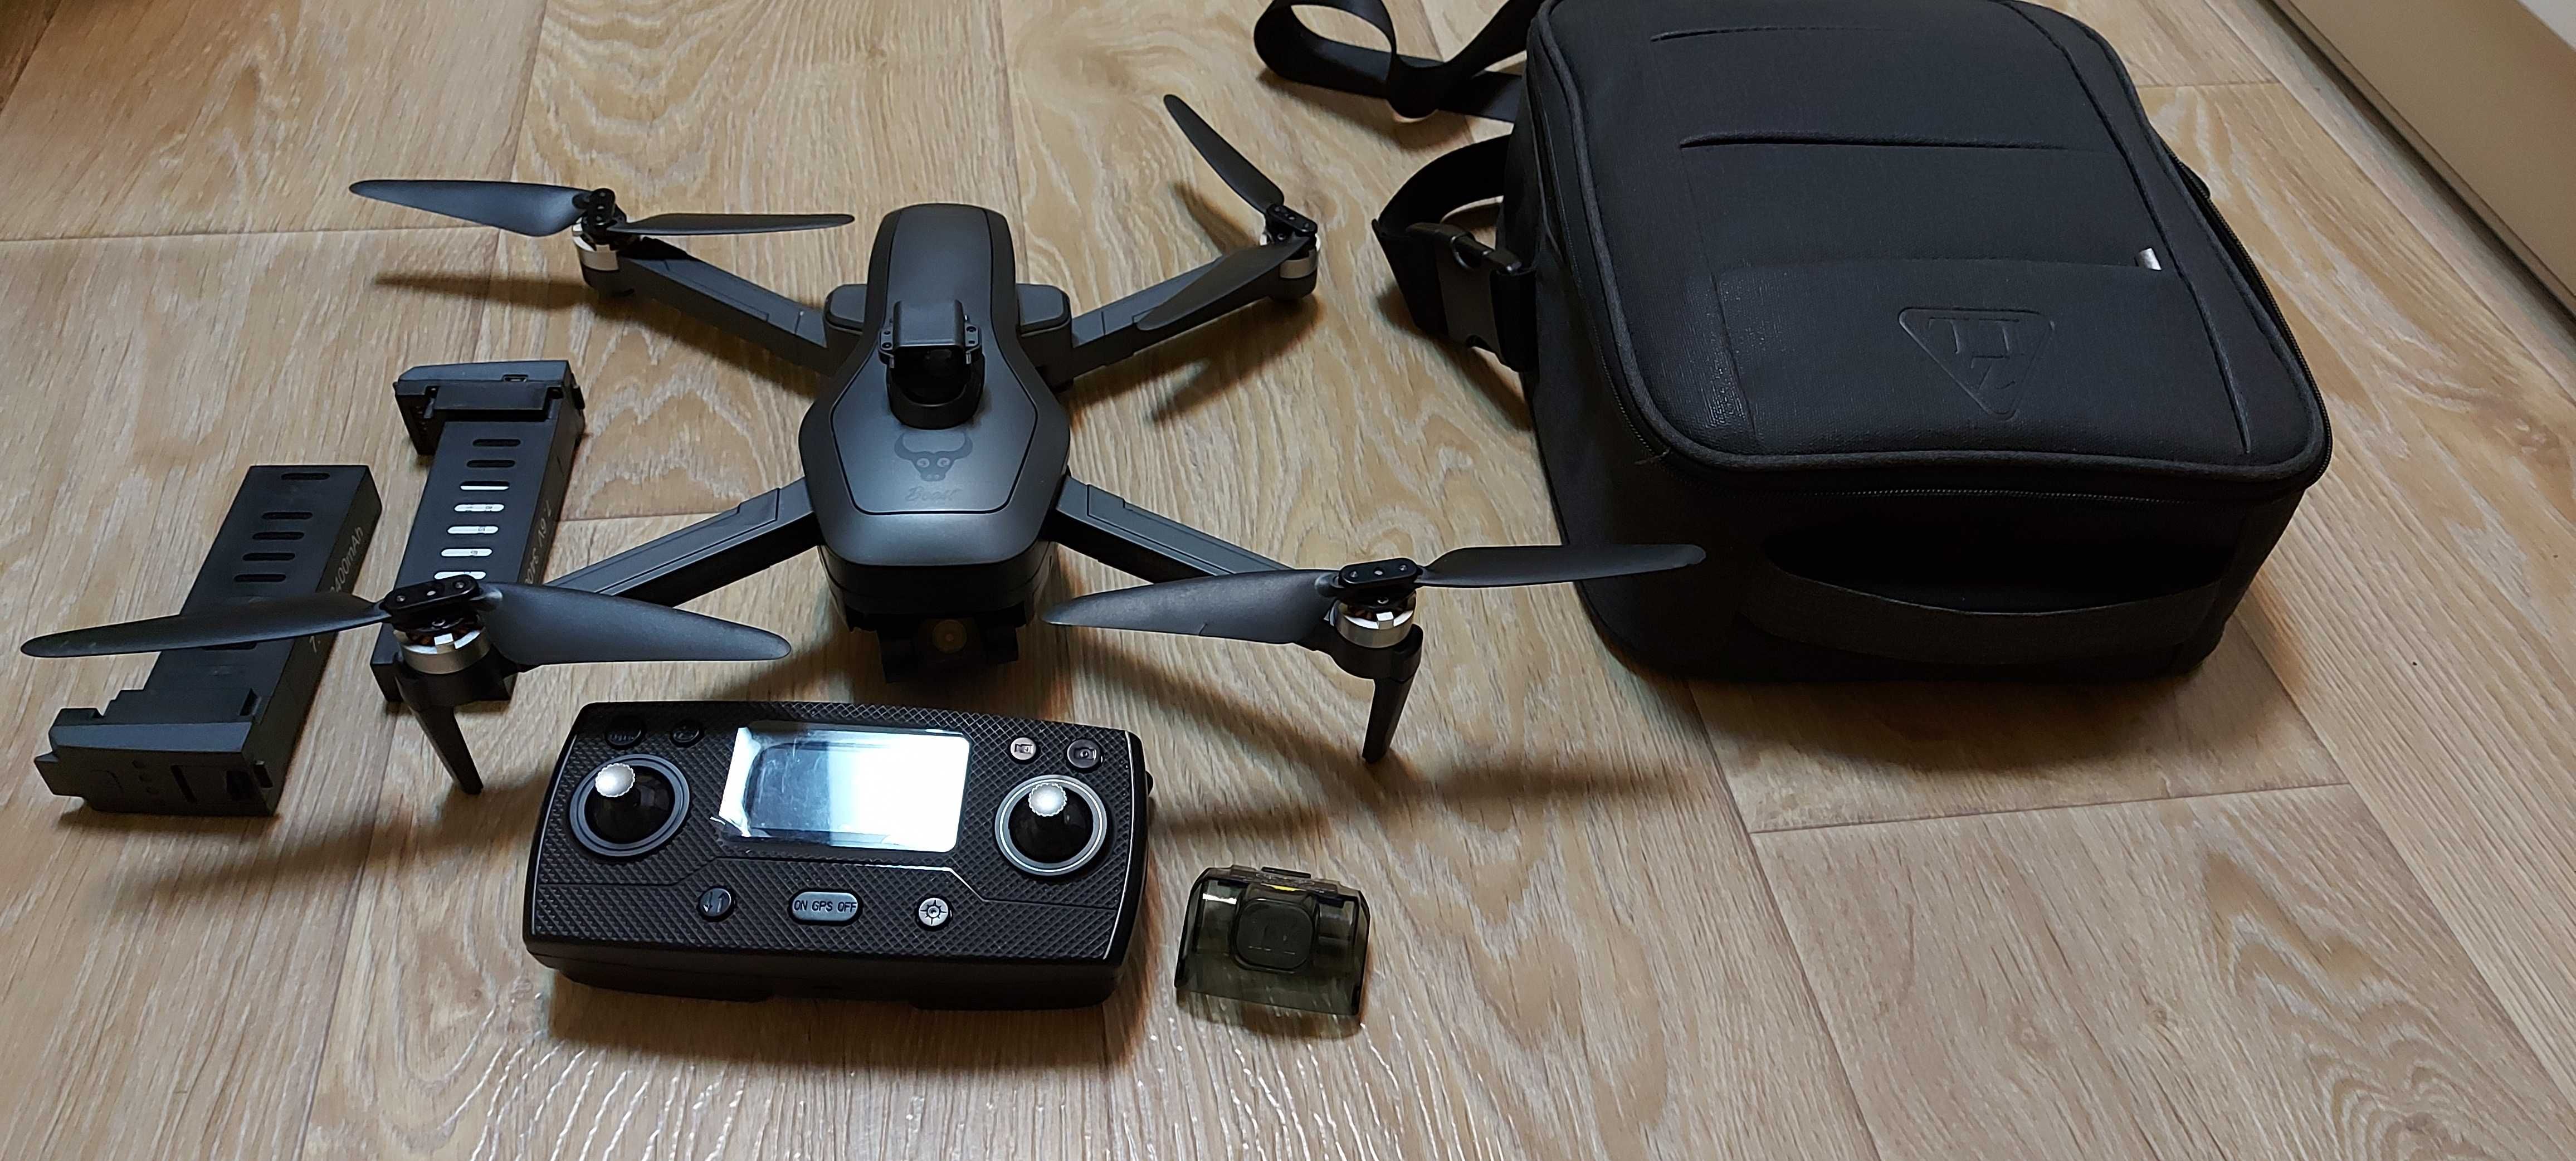 Dron SG906max GPS,unikanie przeszkód,4k, dwie kamery,gimbal,3 baterie,